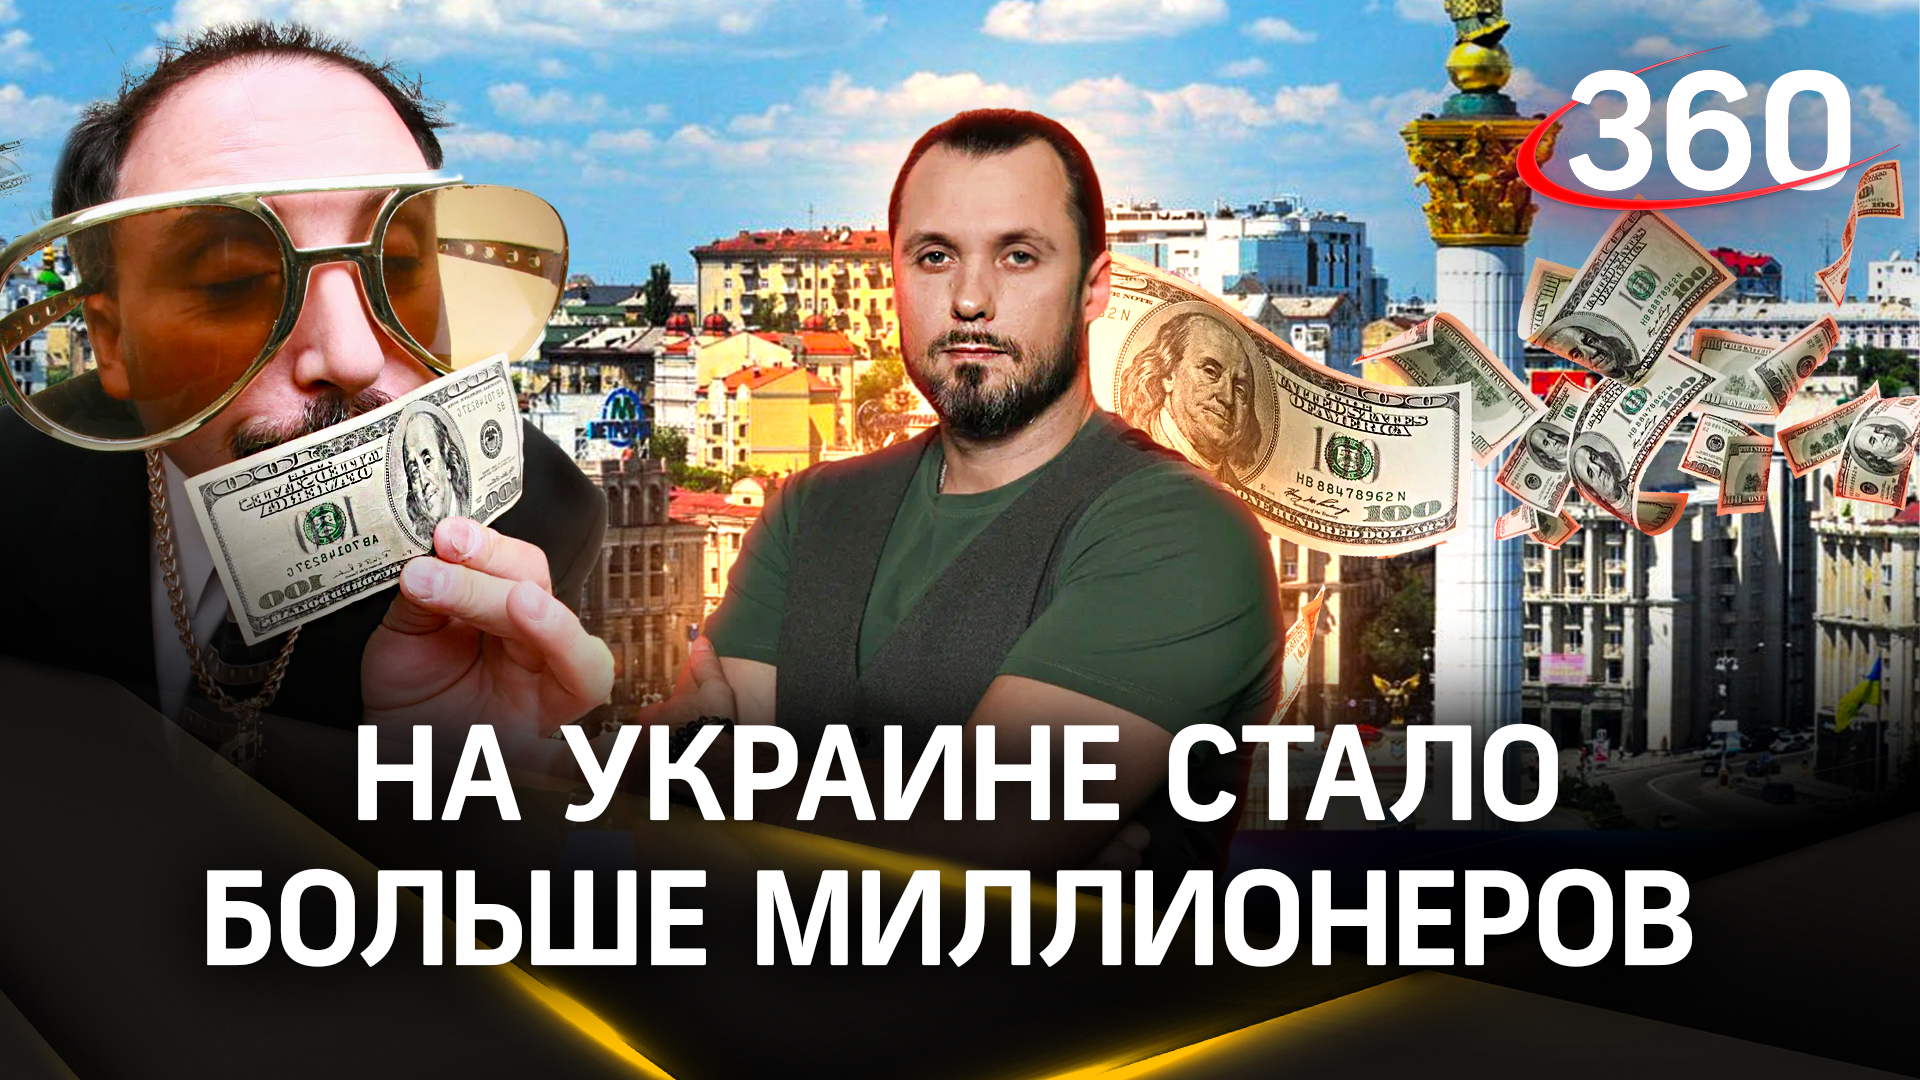 На Украине резко выросло число миллионеров | ЧП Иван Бер